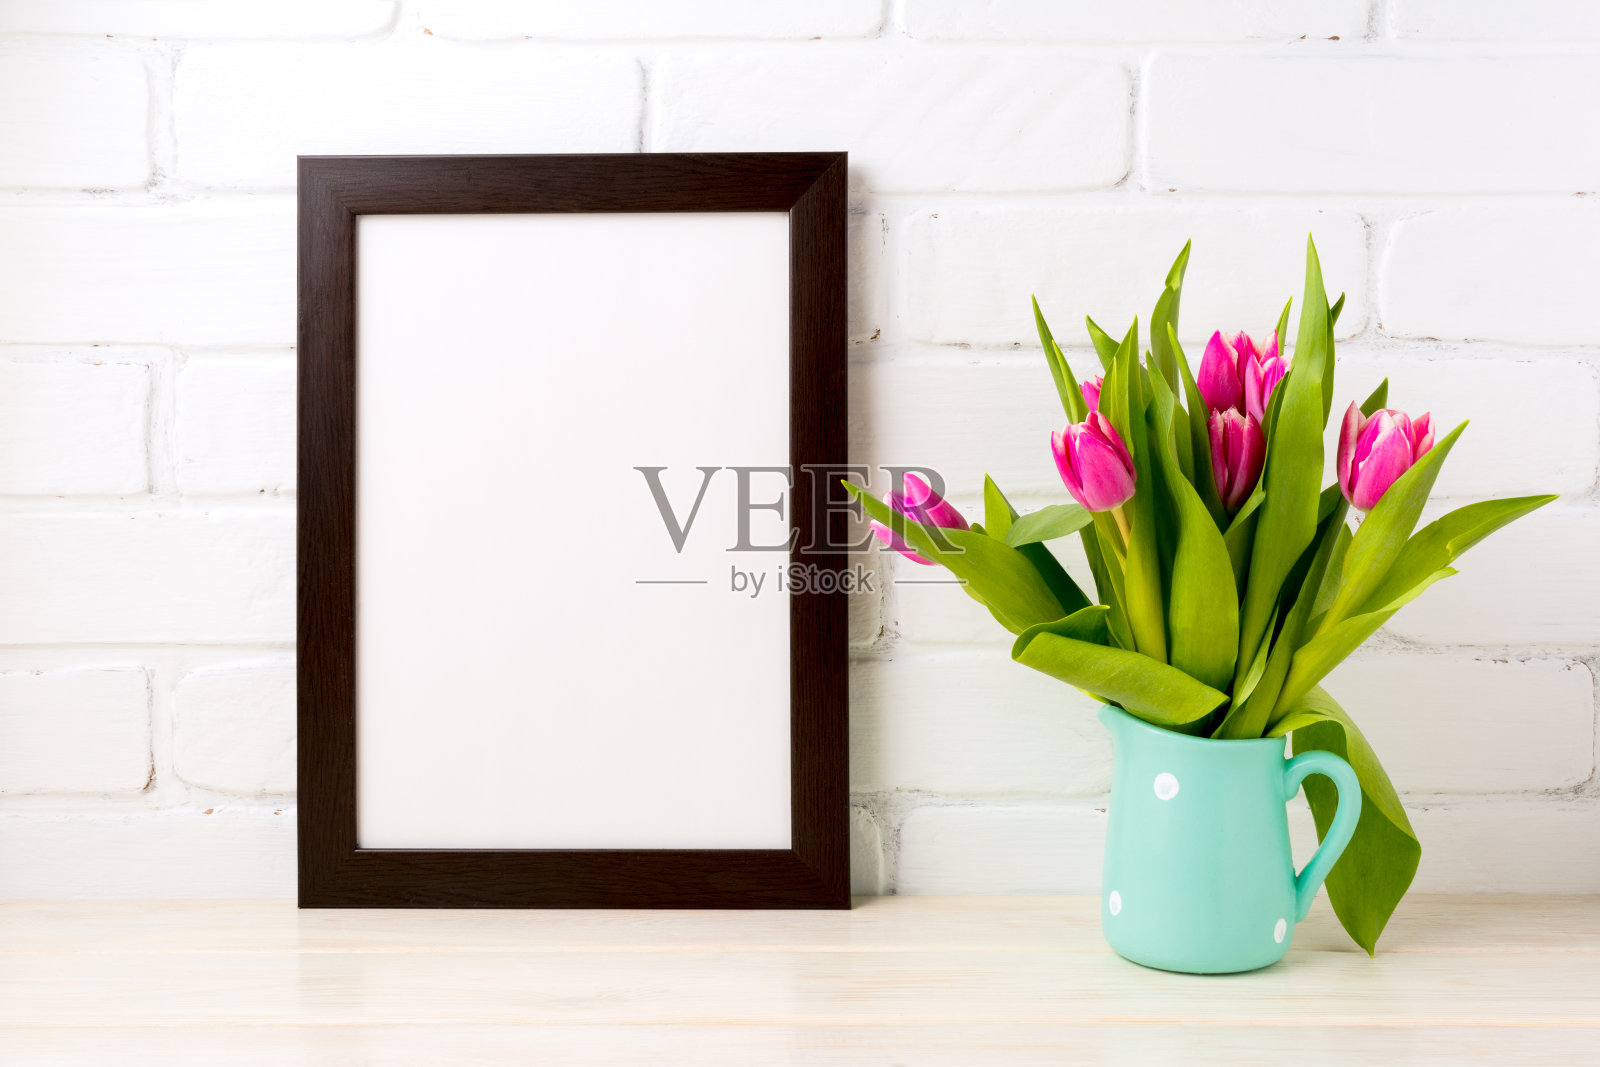 黑色棕色框架模型与丰富的粉红色郁金香照片摄影图片